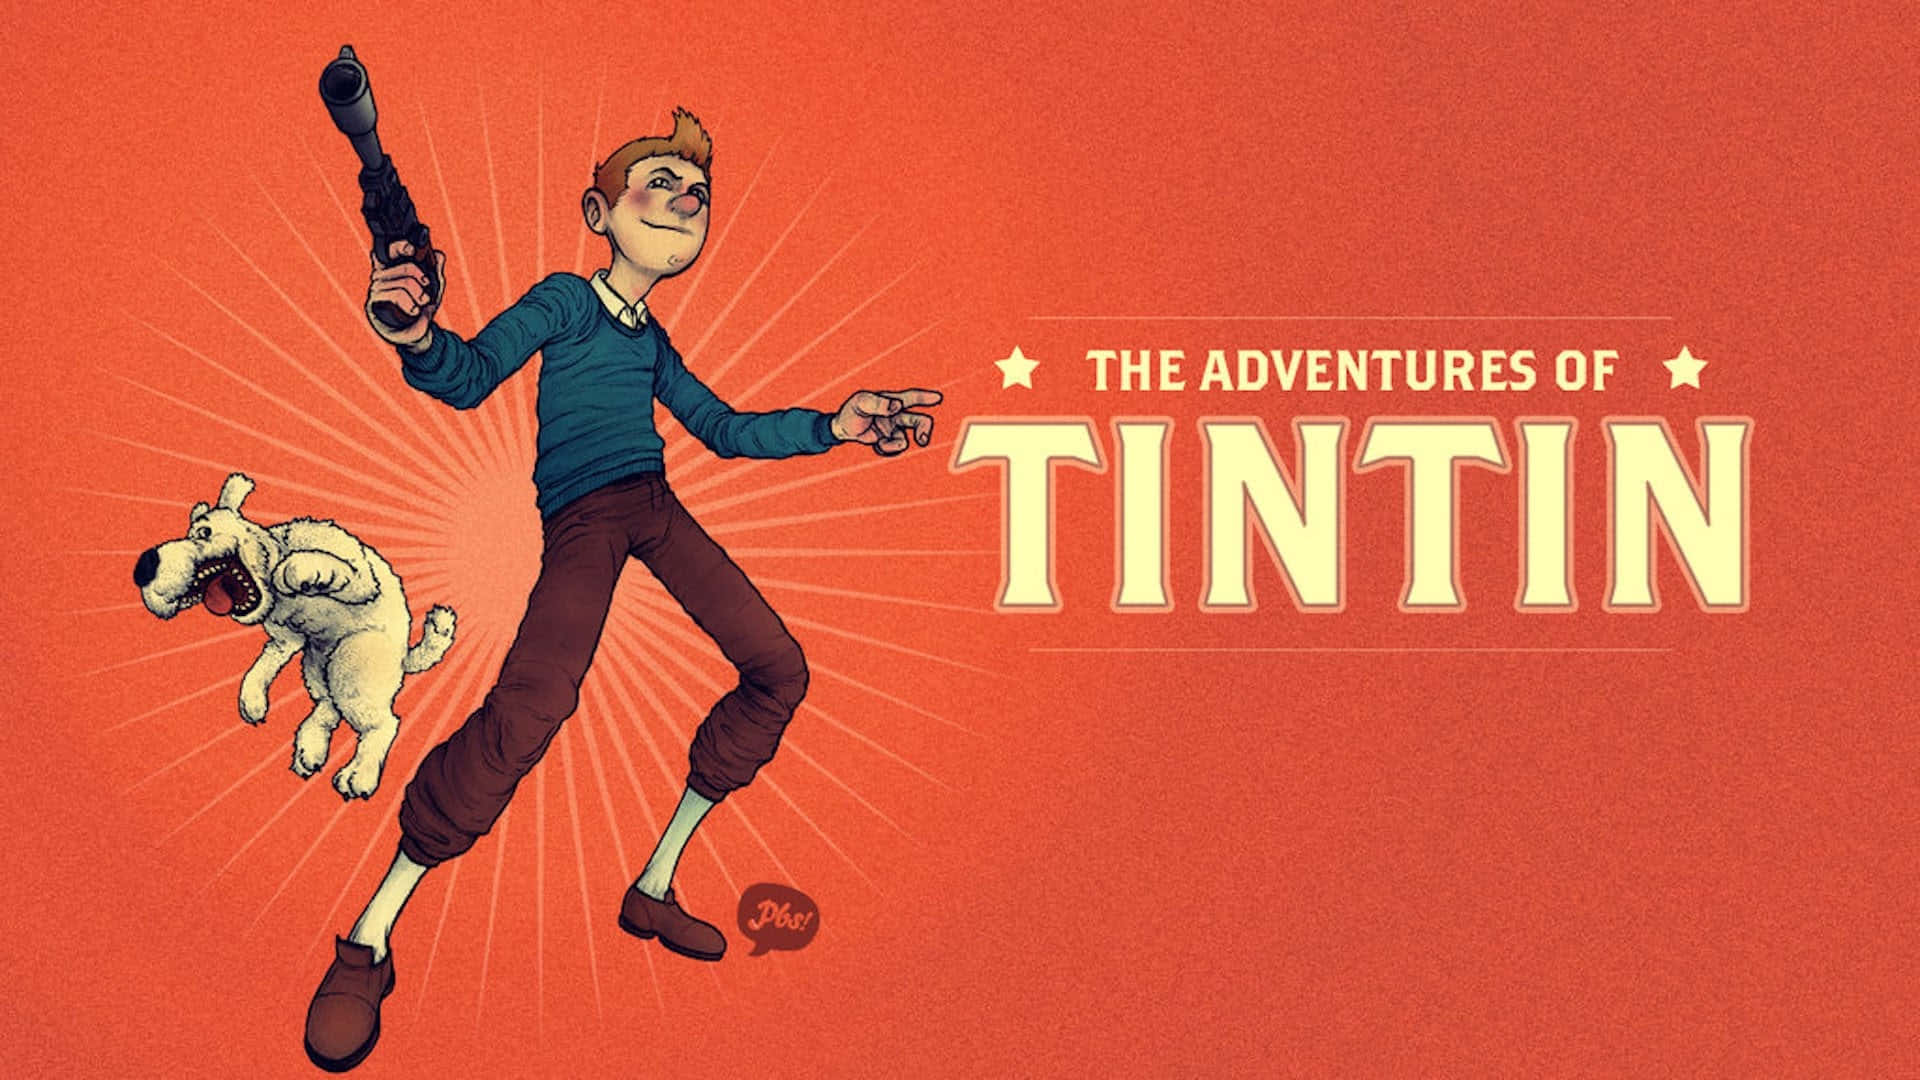 Download Adventures of Tintin - Art Wallpaper | Wallpapers.com